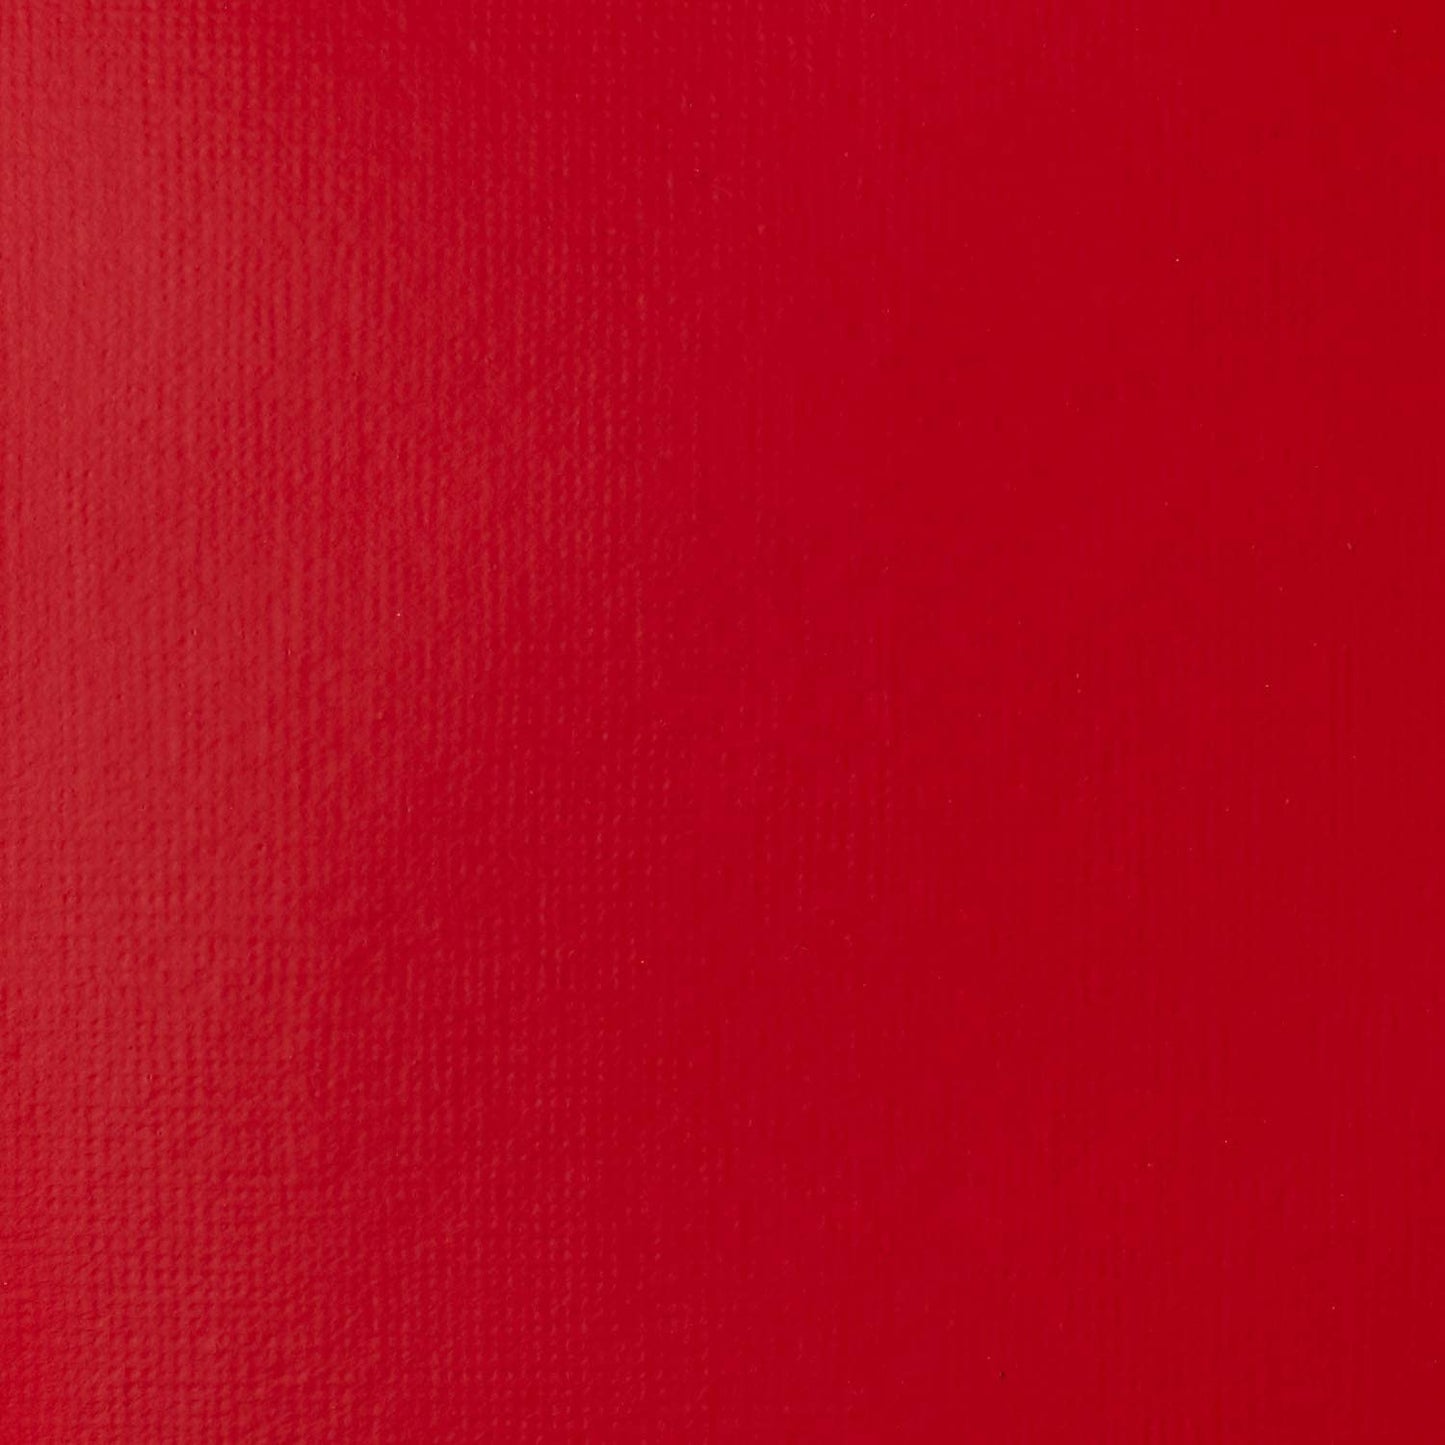 1046151 - Cadmium Red Medium Hue 2.jpg